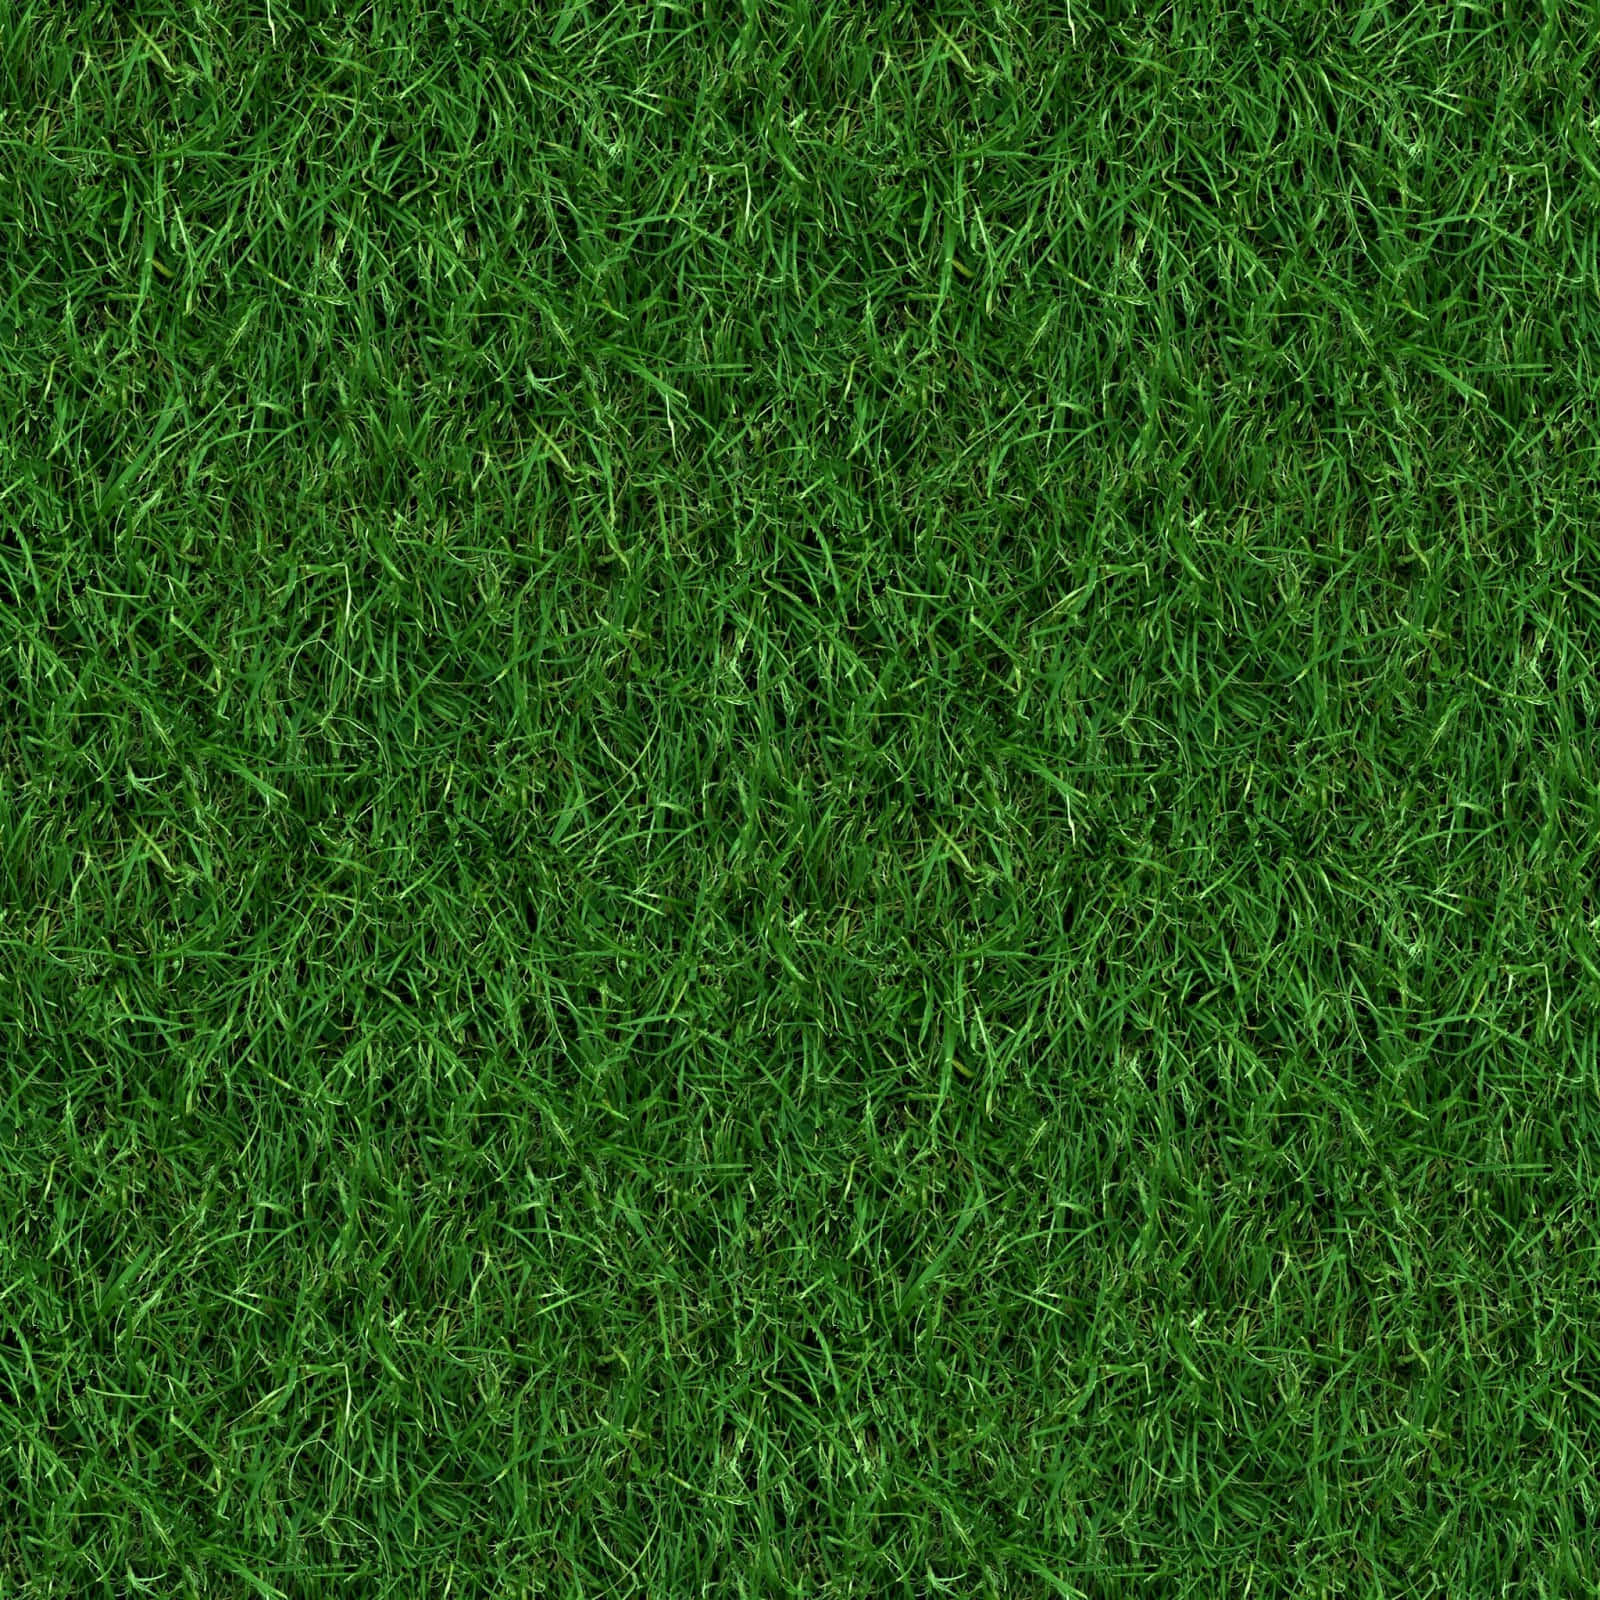 A Green Grass Background With A Grass Texture